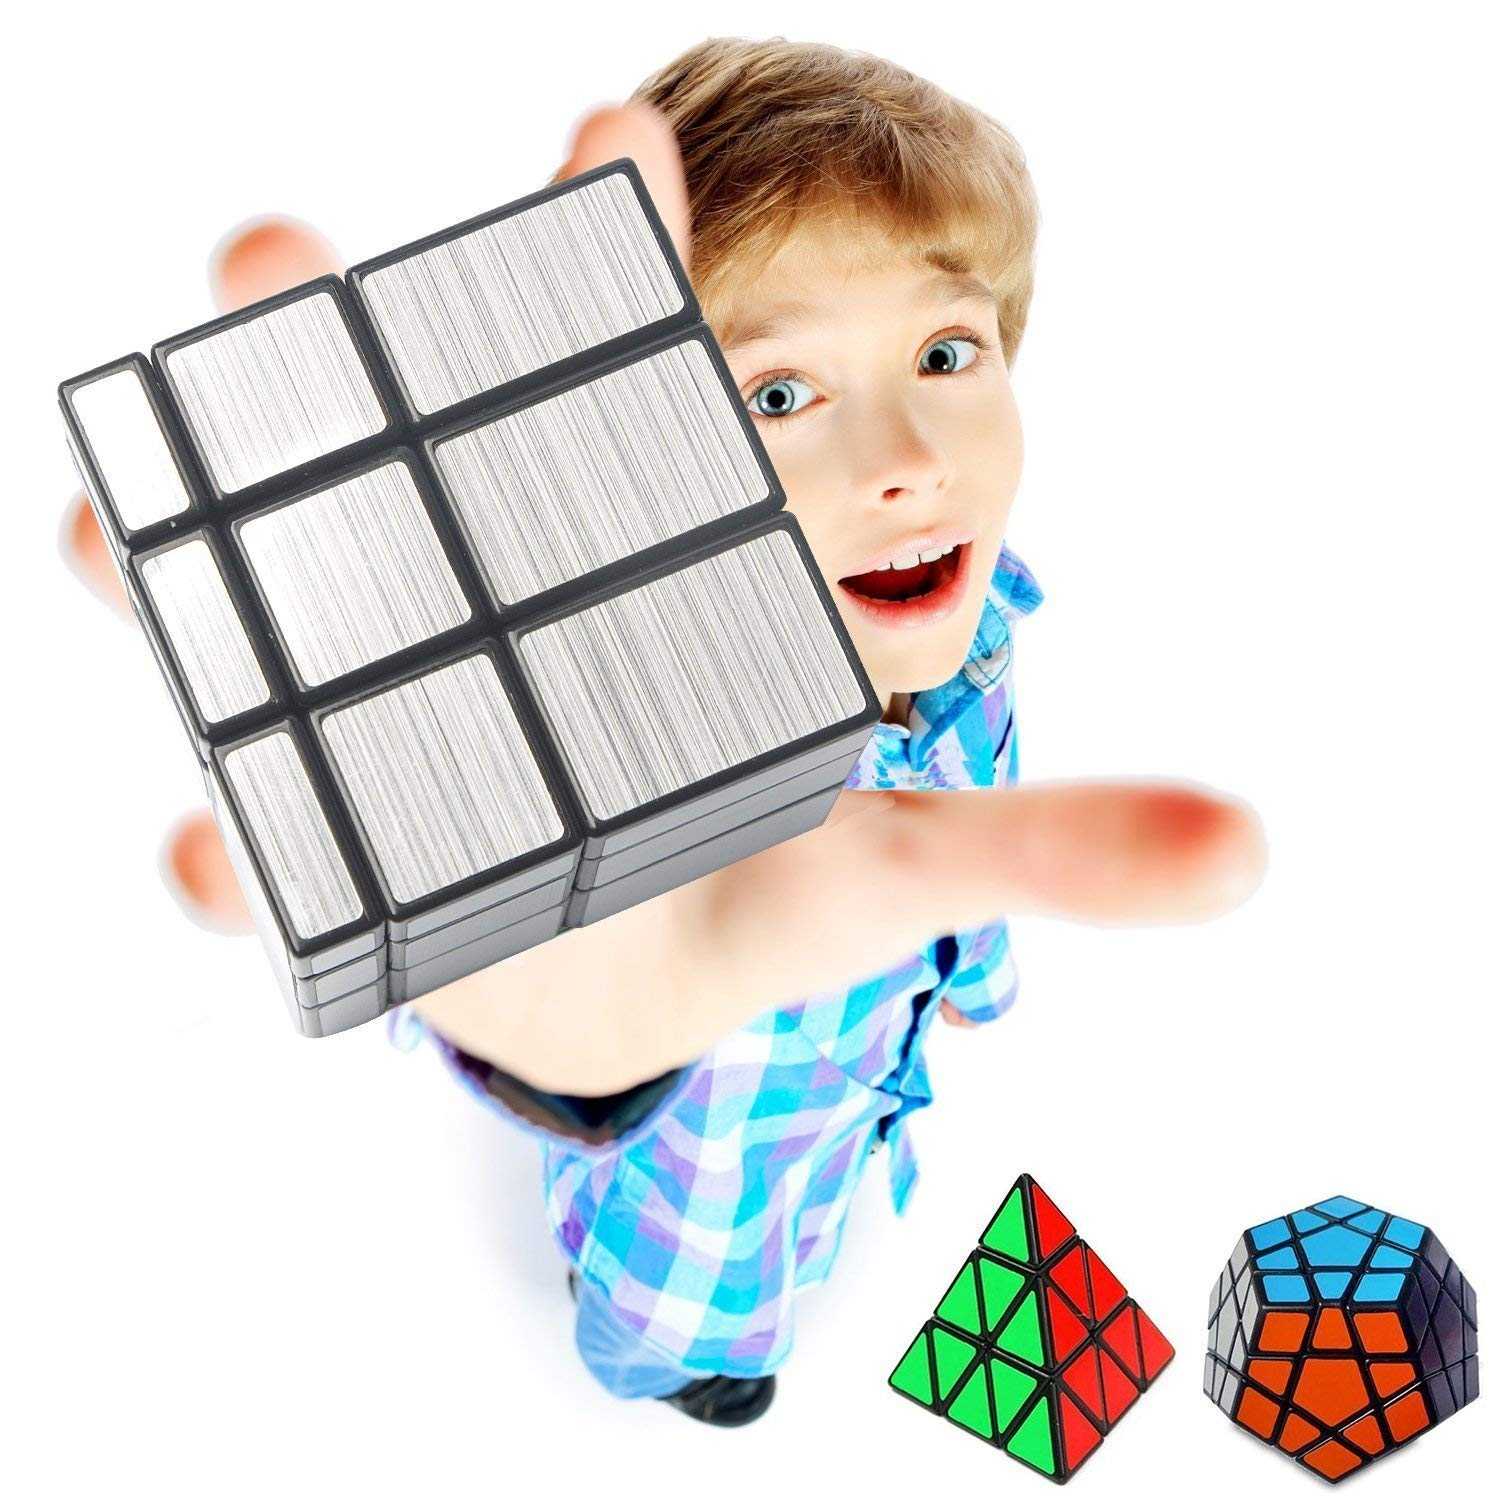 Кубик рубика: история создания самой знаменитой игрушки в мире - ребёнок.ру
                                             - 5 июня
                                             - 43851658772 - медиаплатформа миртесен